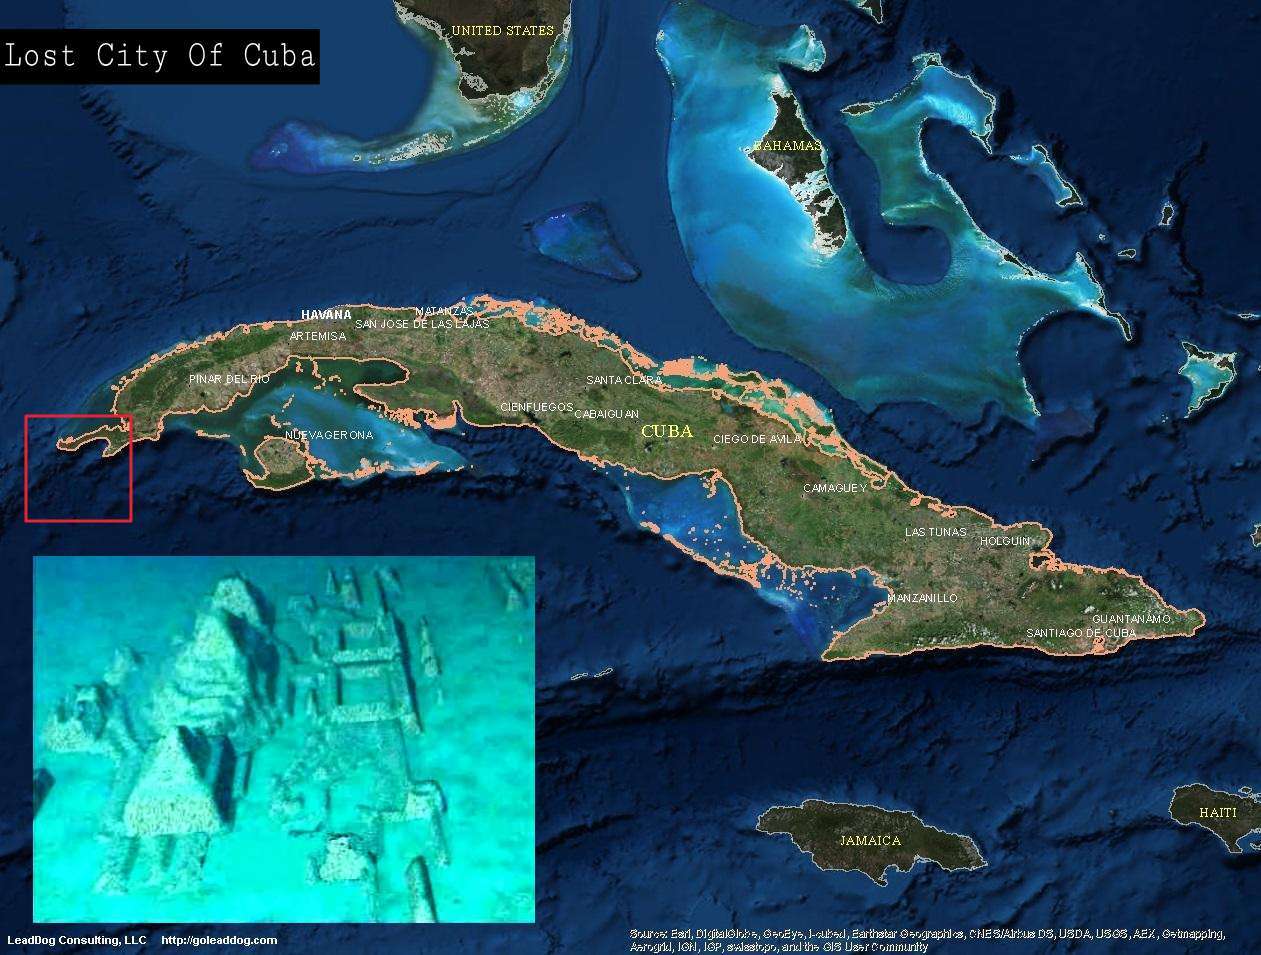 Kuba víz alatti városa